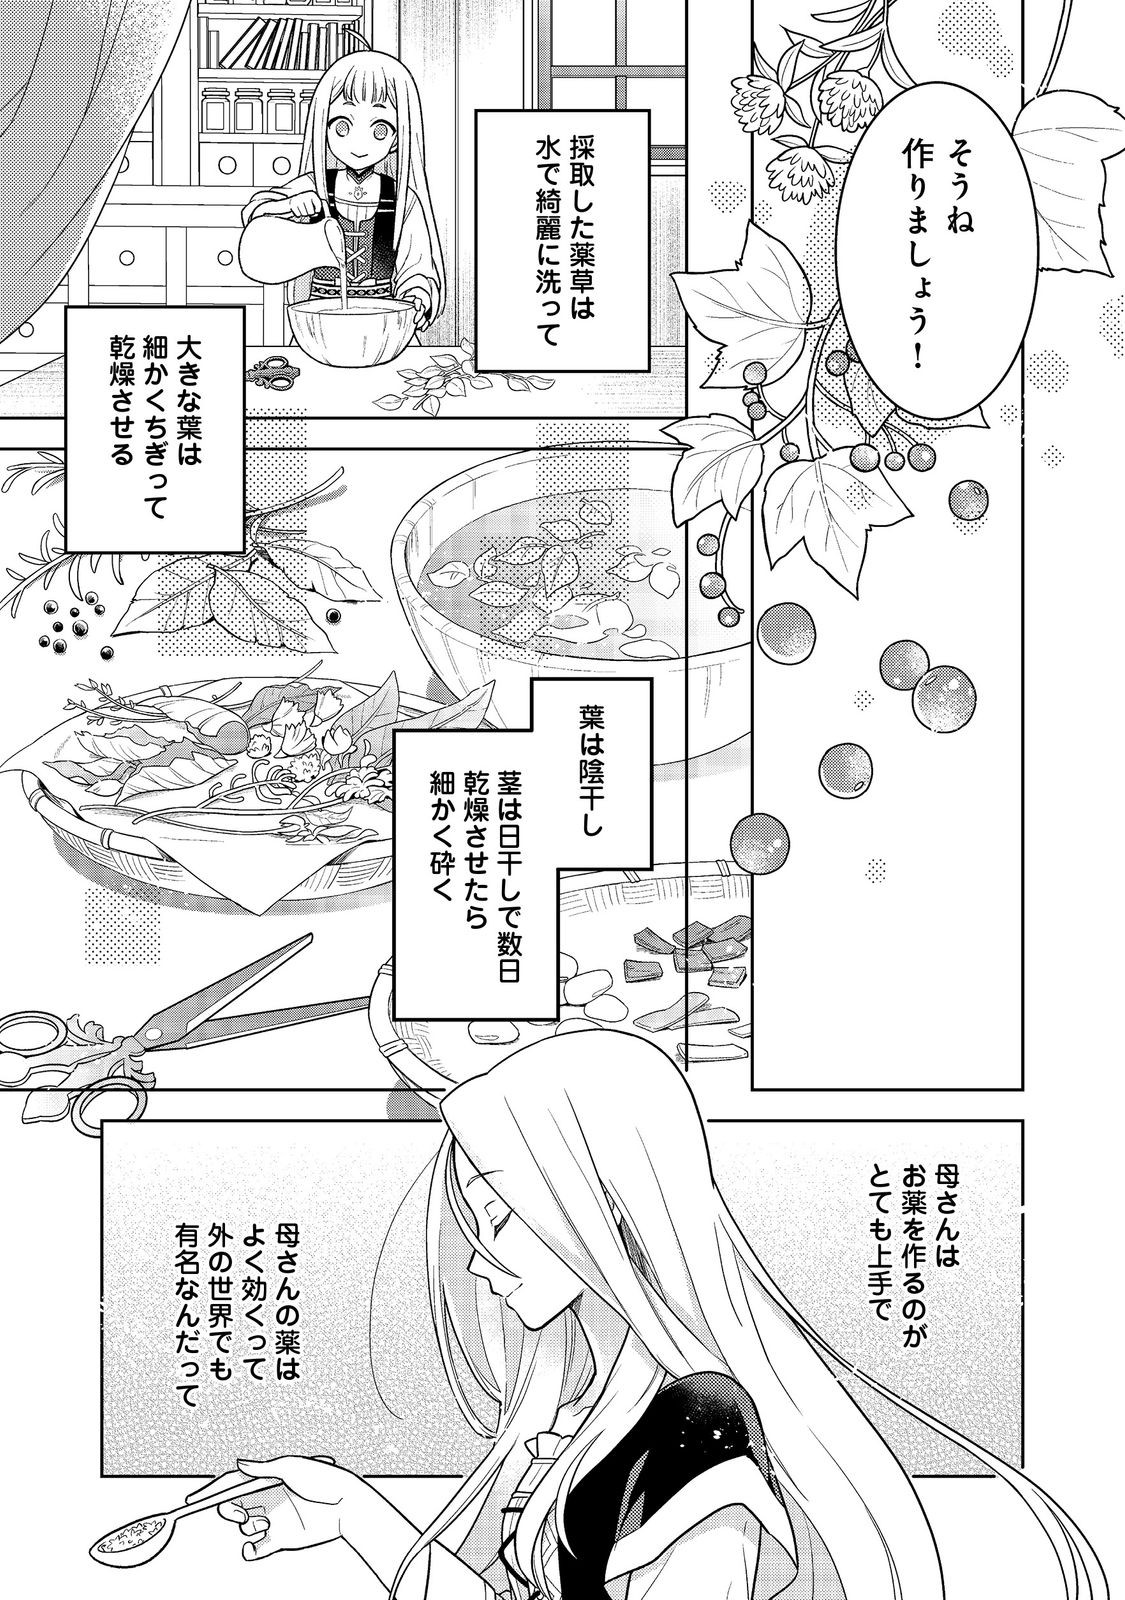 Mori no Hashikko no Chibi Majo-san - Chapter 1 - Page 11